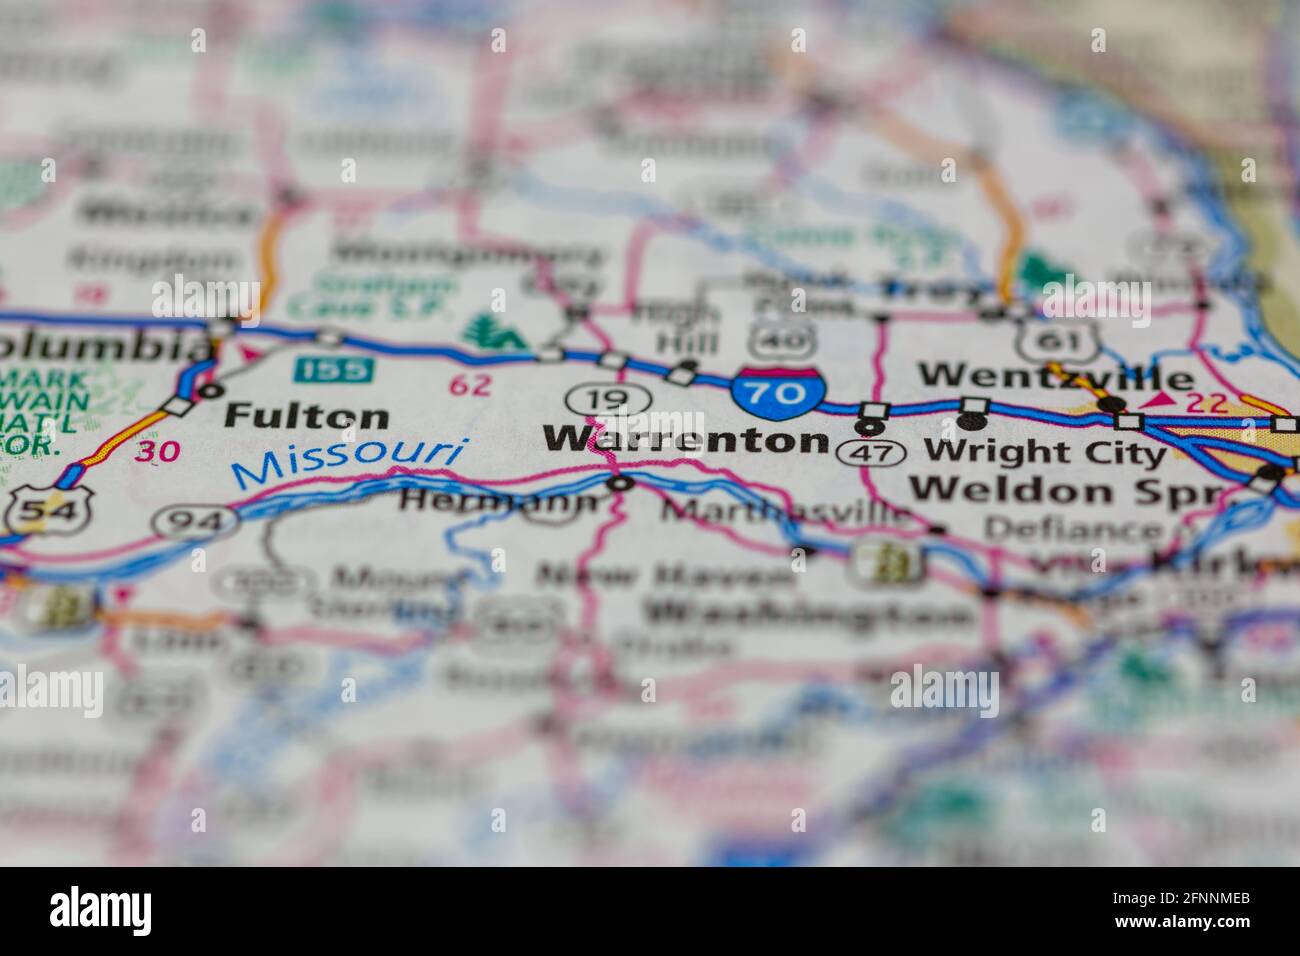 Warrenton Missouri USA mostrato su una mappa geografica o su una strada mappa Foto Stock